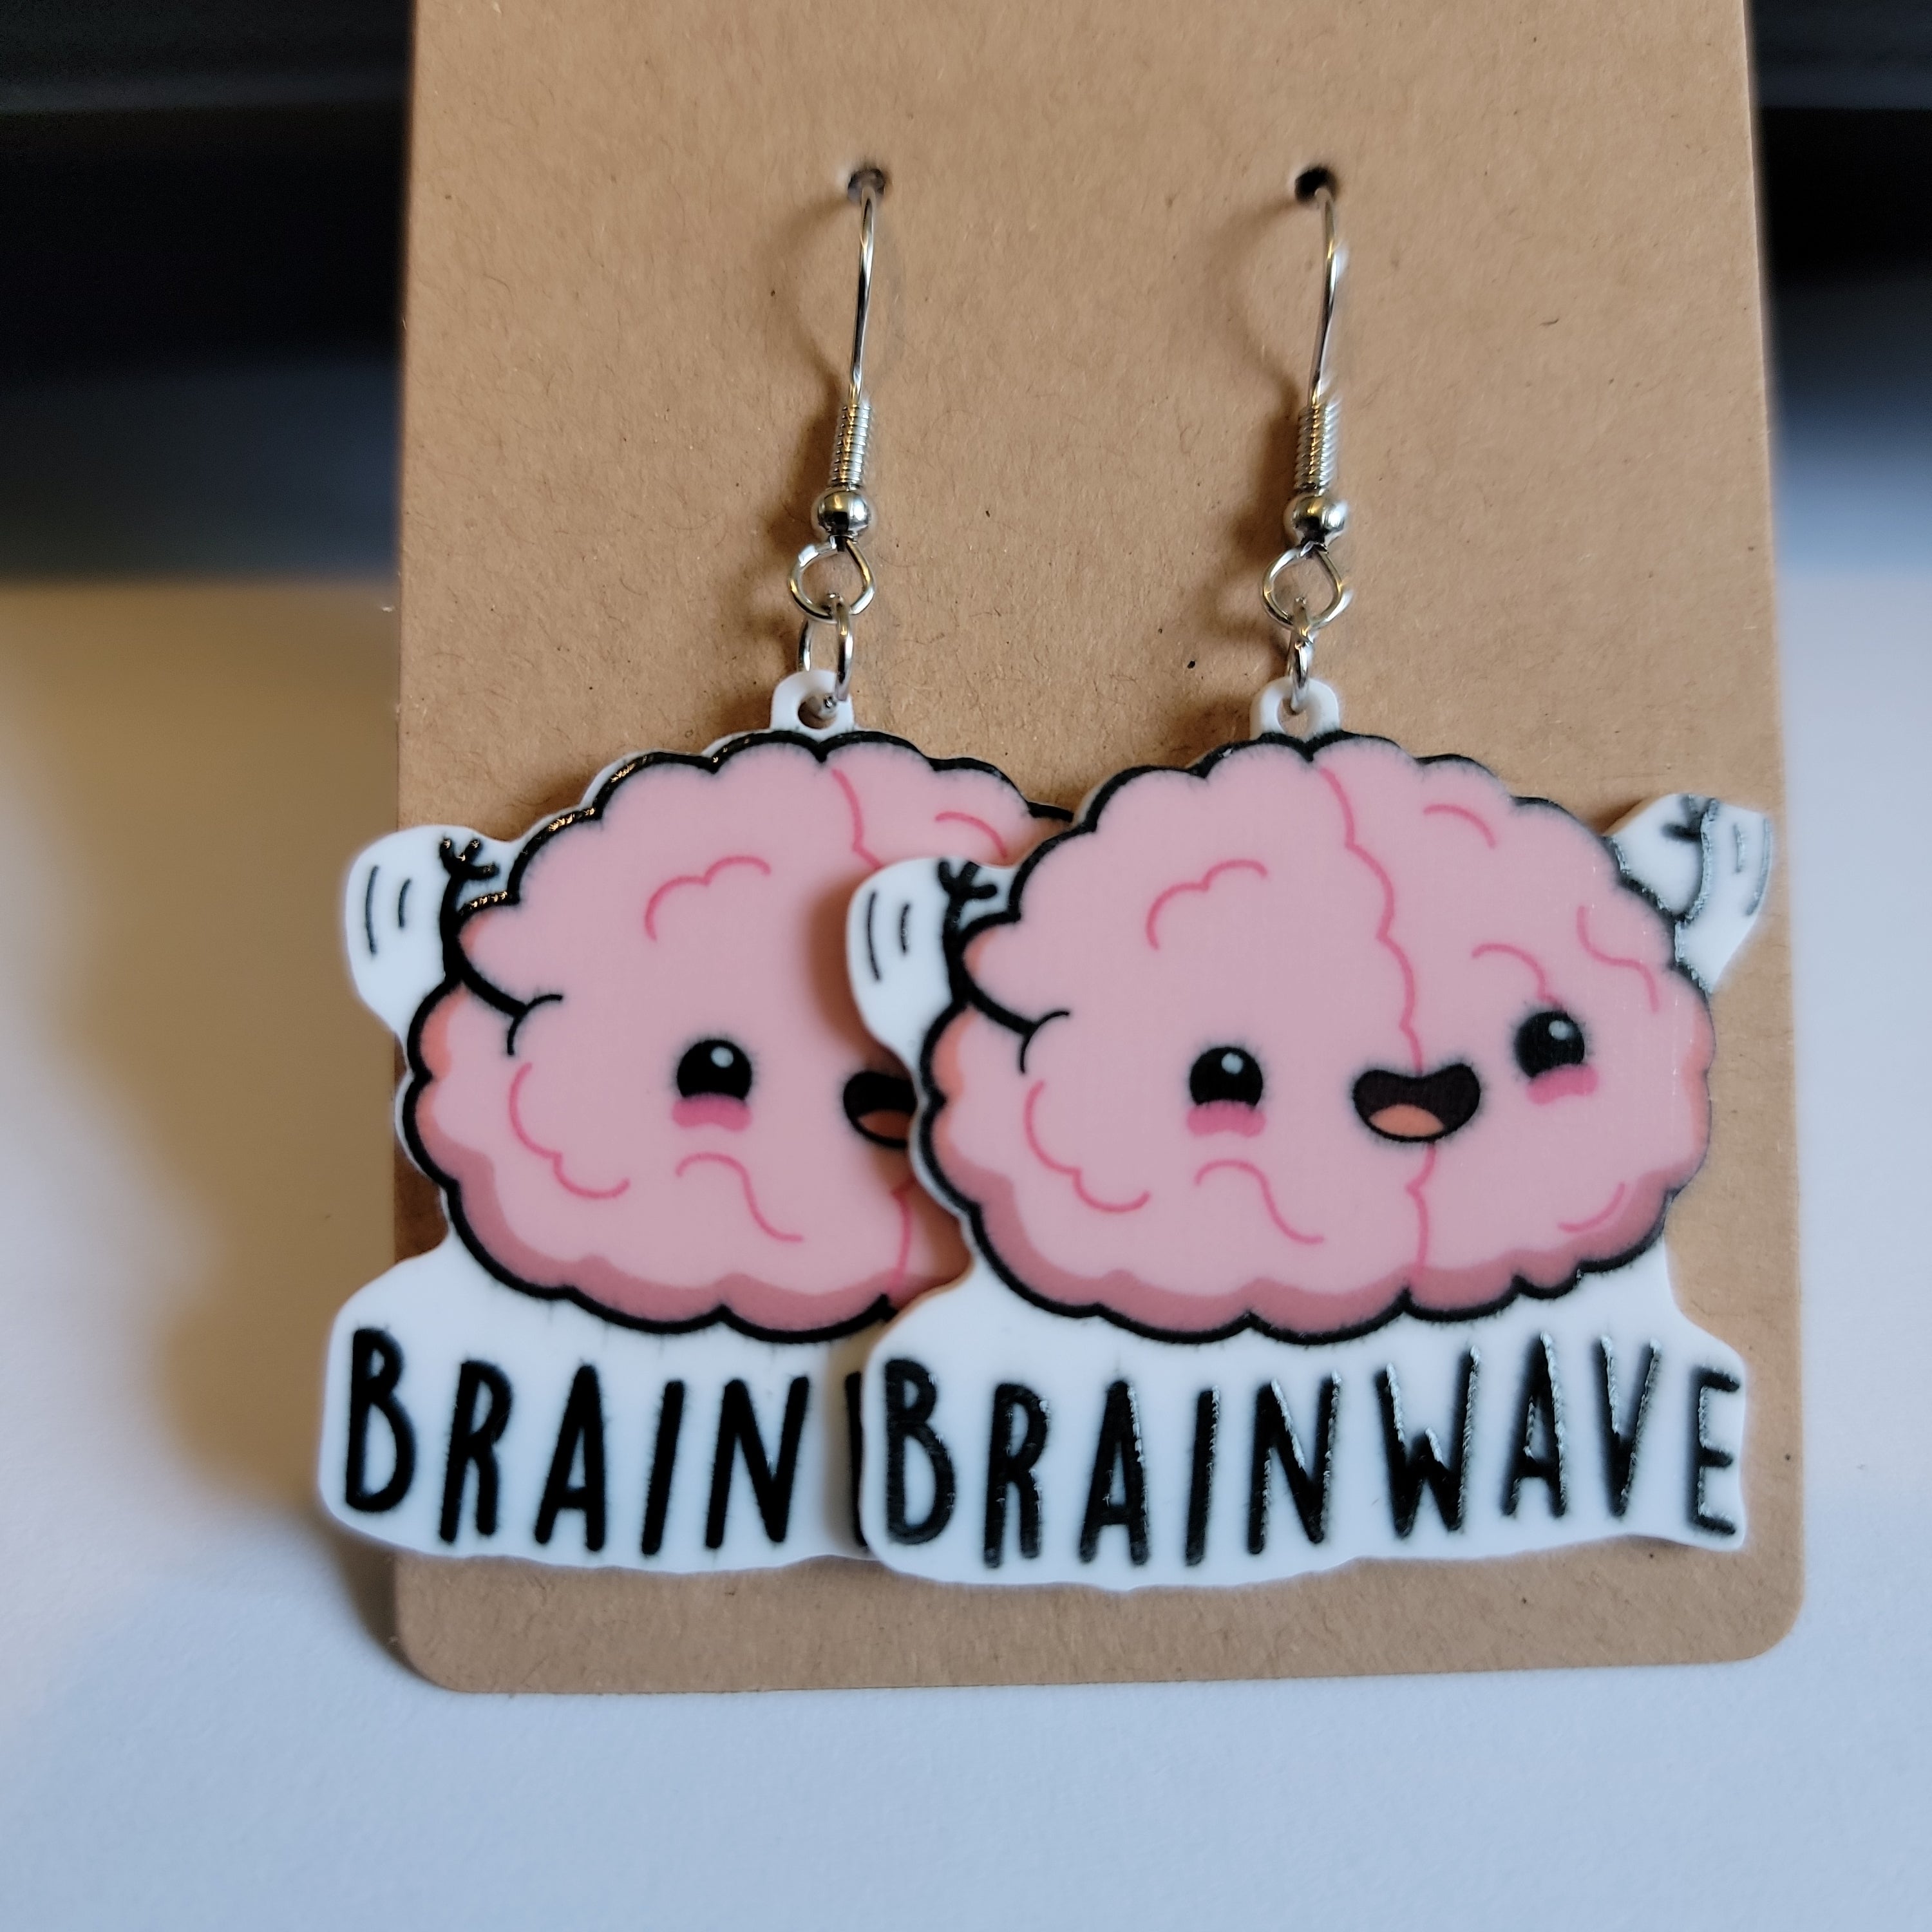 Brainwave Earrings